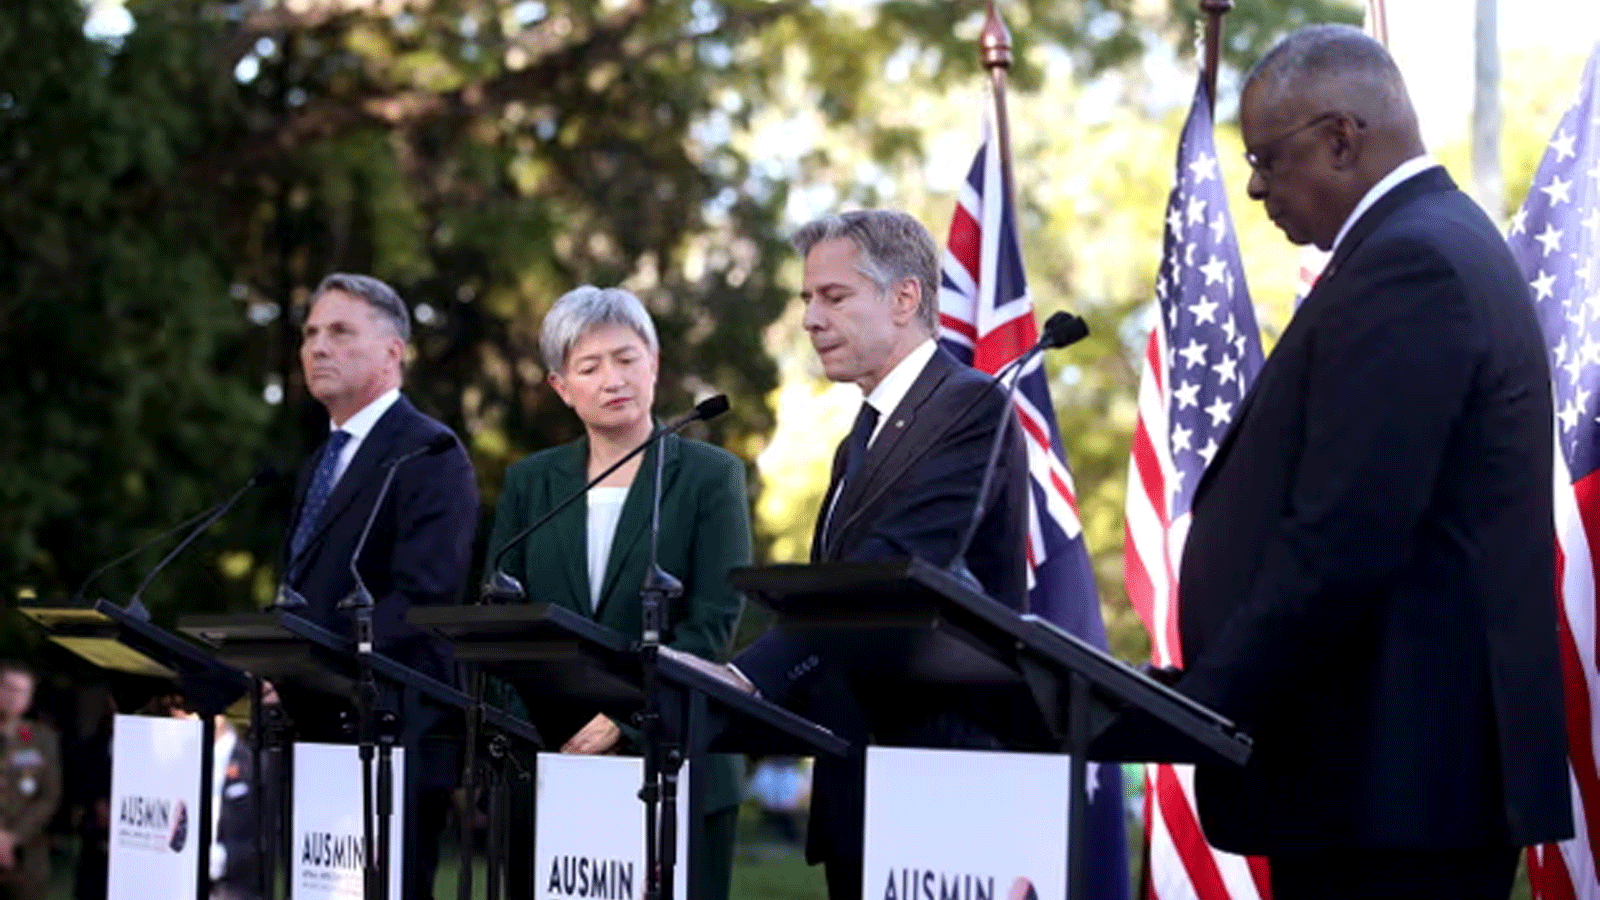 الأسترالي ريتشارد مارليس وبيني وونغ مع الأمريكيين أنتوني بلينكين ولويد أوستن في مؤتمر صحفي بعد محادثات أوسمين في بريزبين